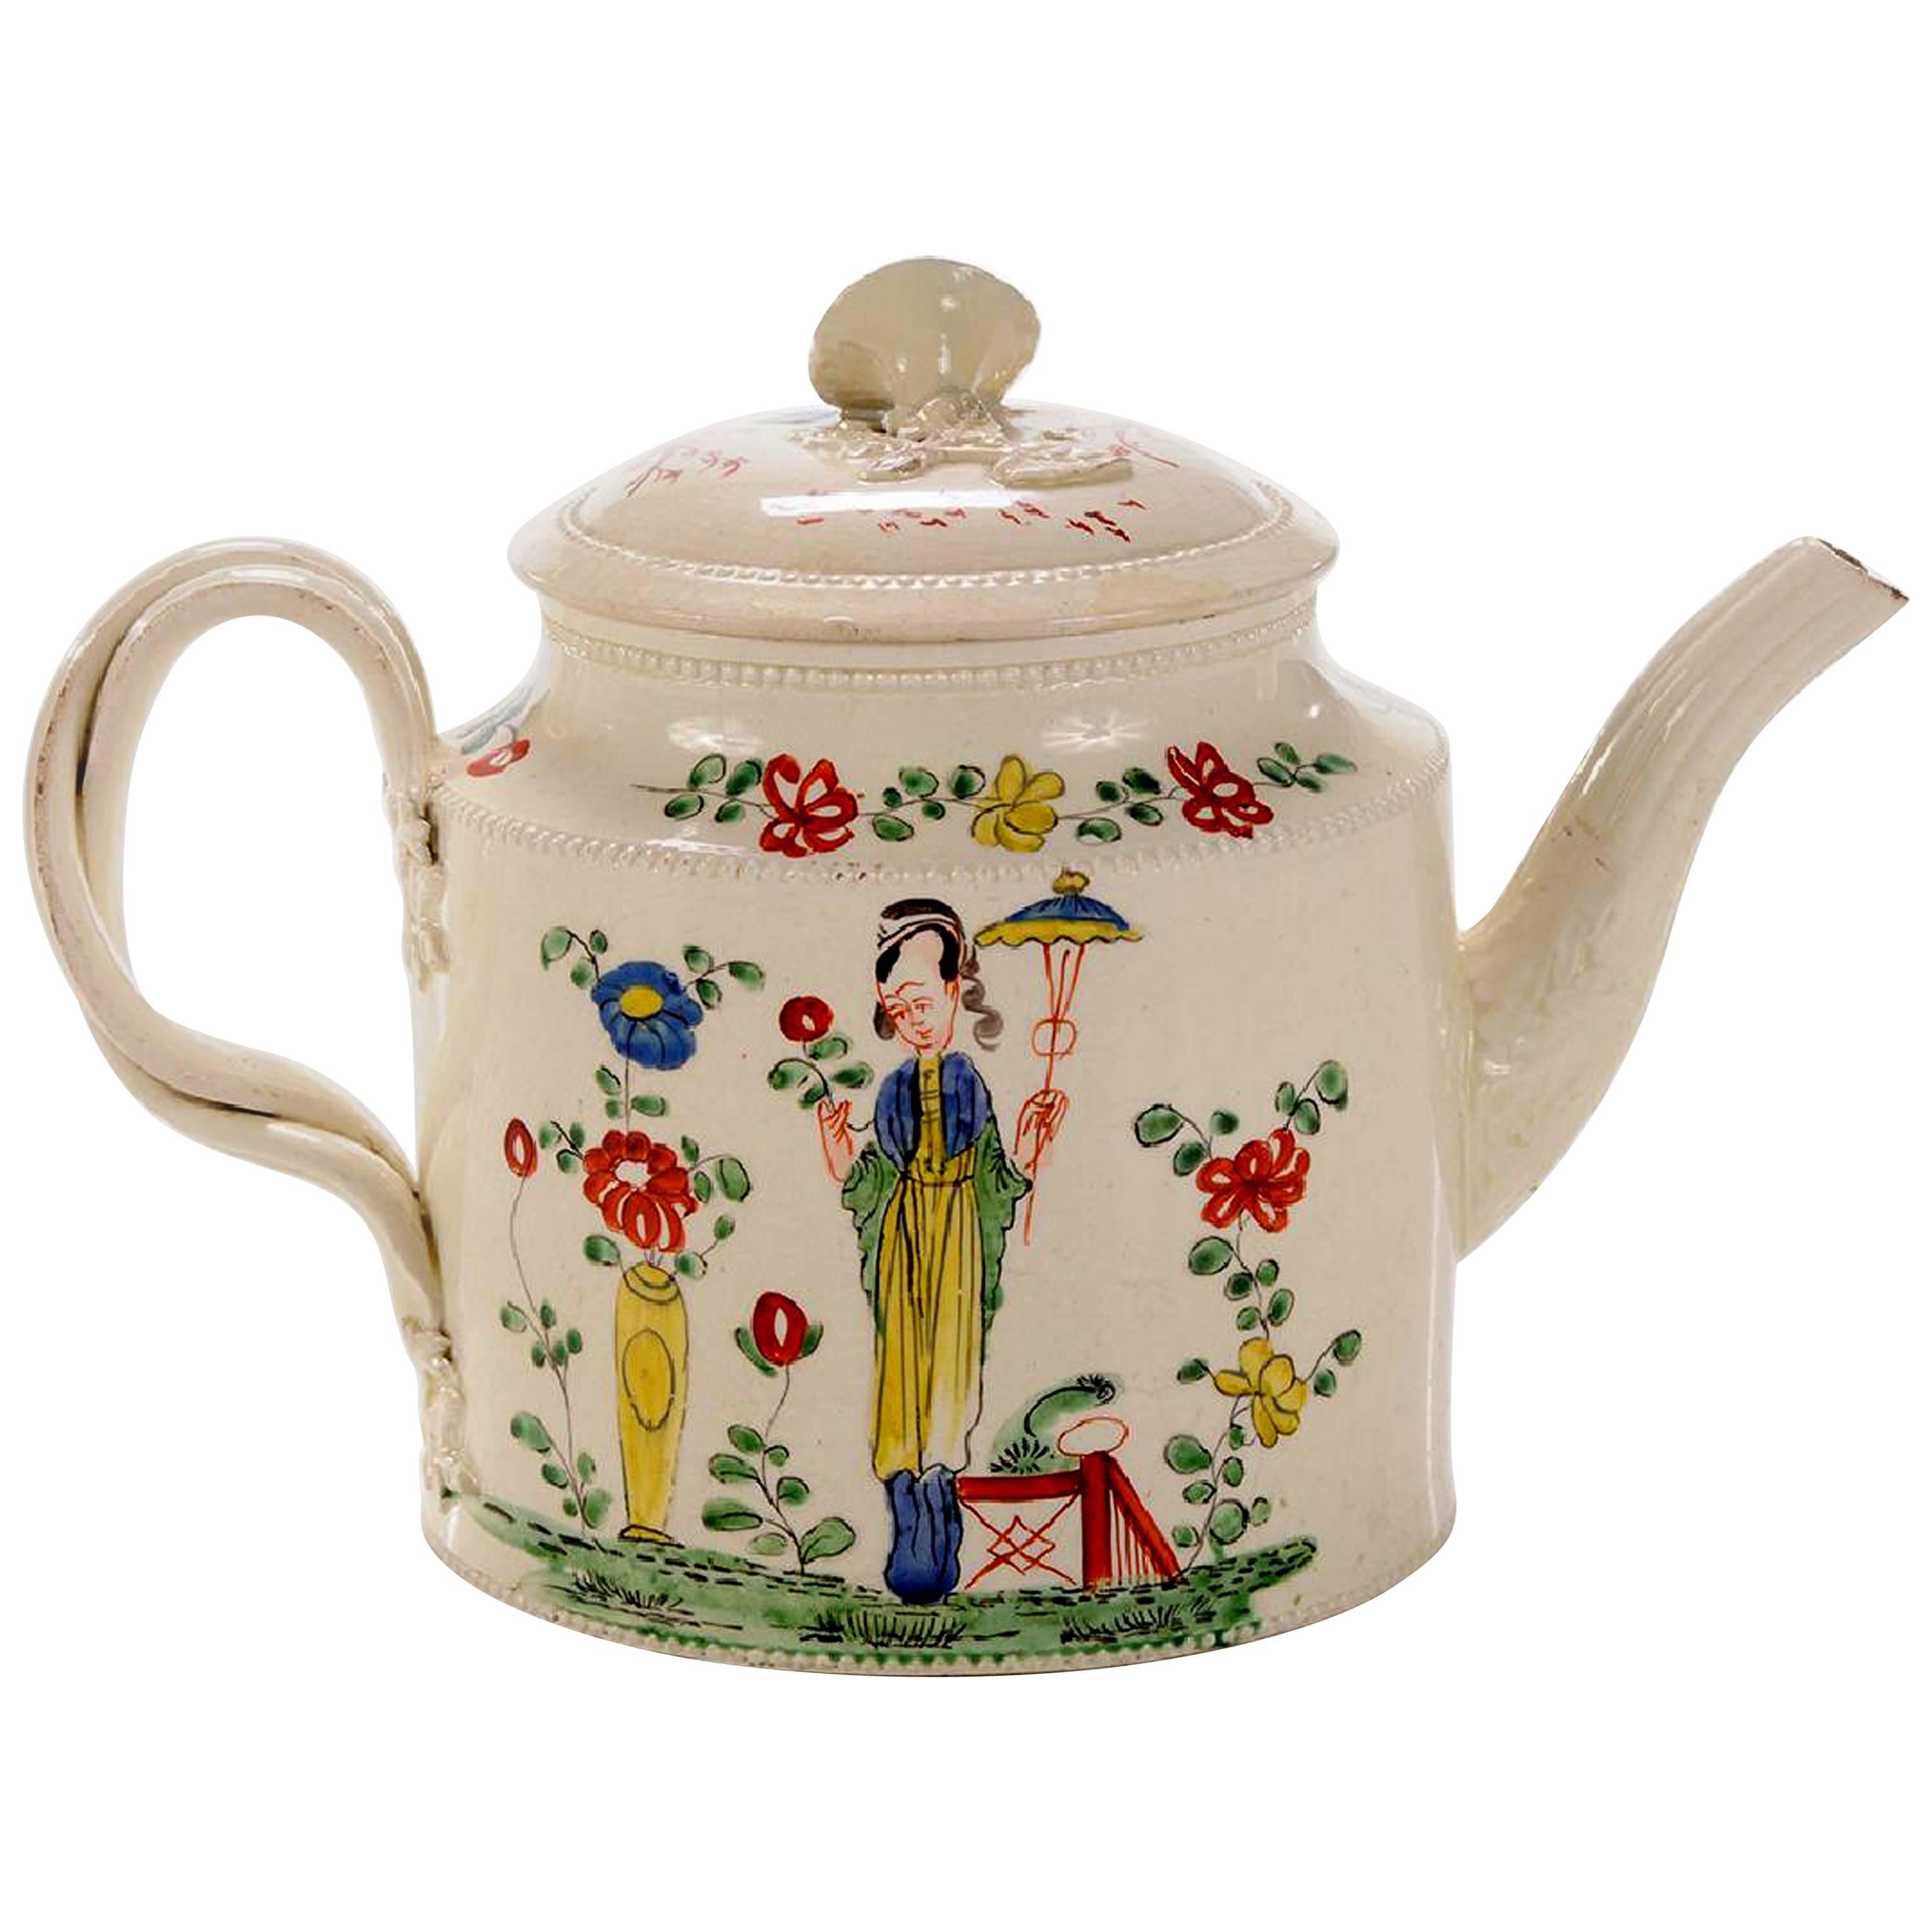 Chinoiserie Creamware Pottery Teapot & Cover, Melbourne, Derbyshire, circa 1765